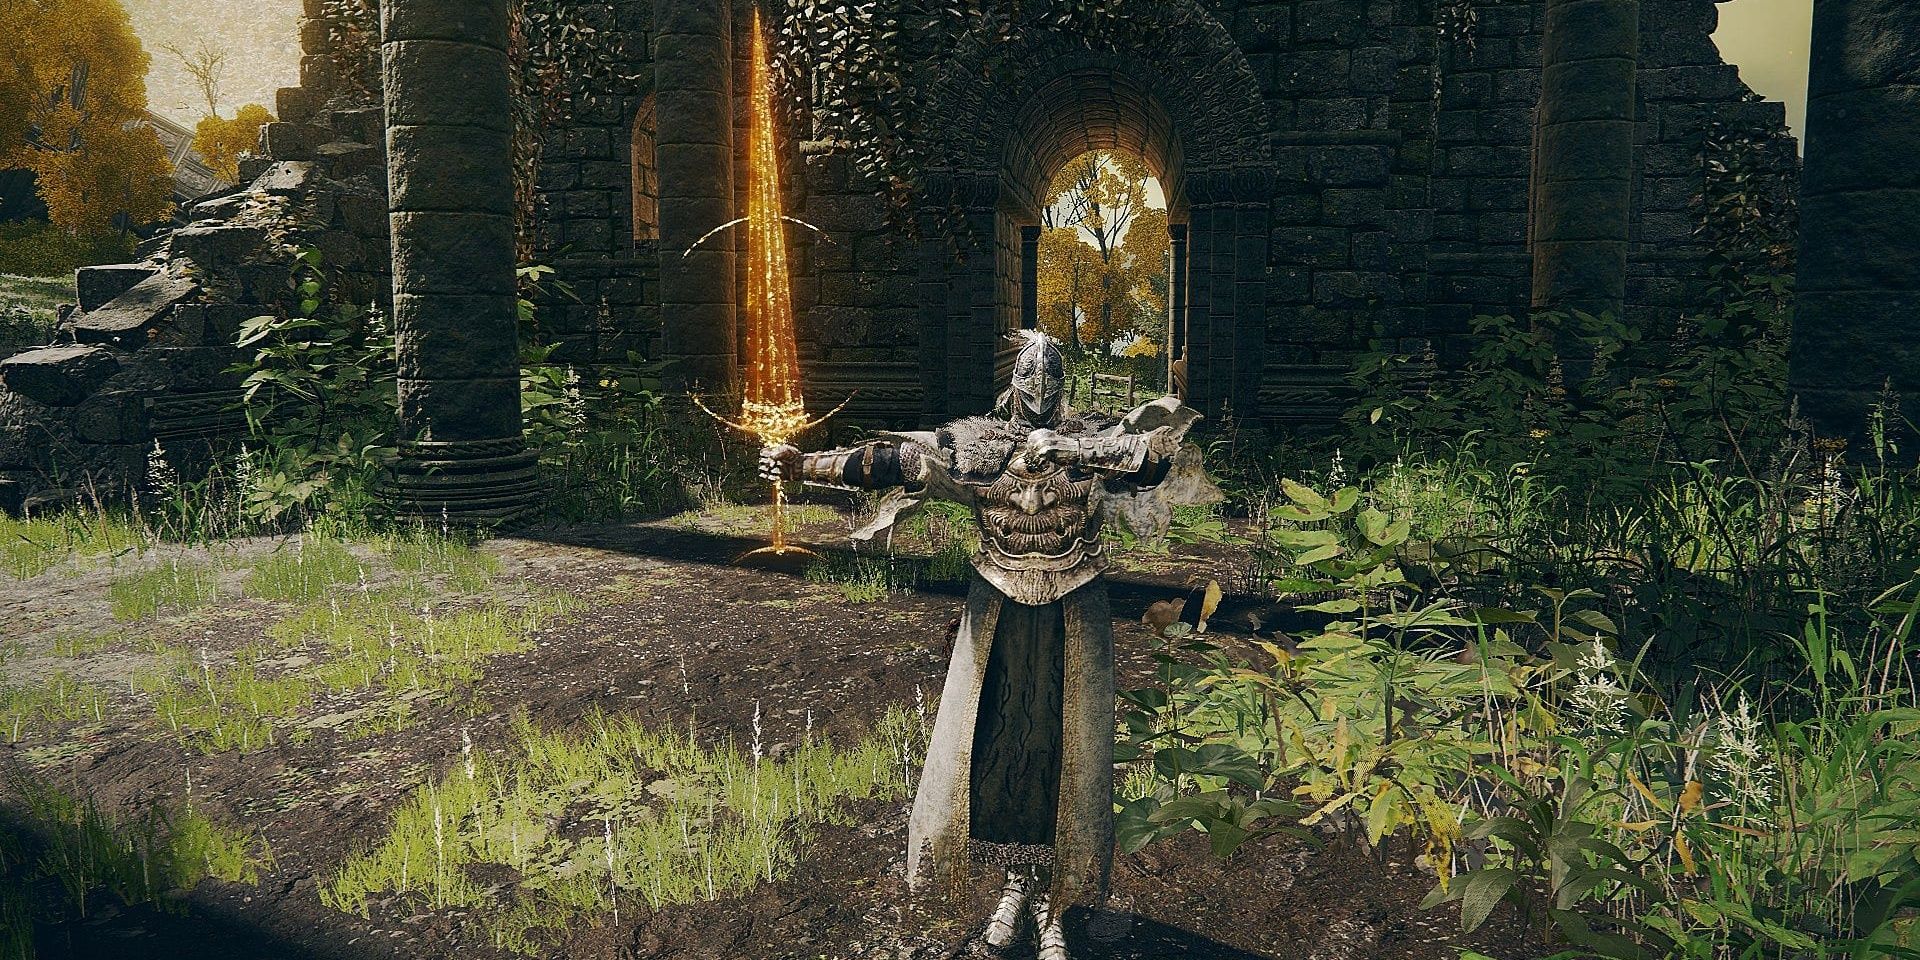 a sword made of golden light